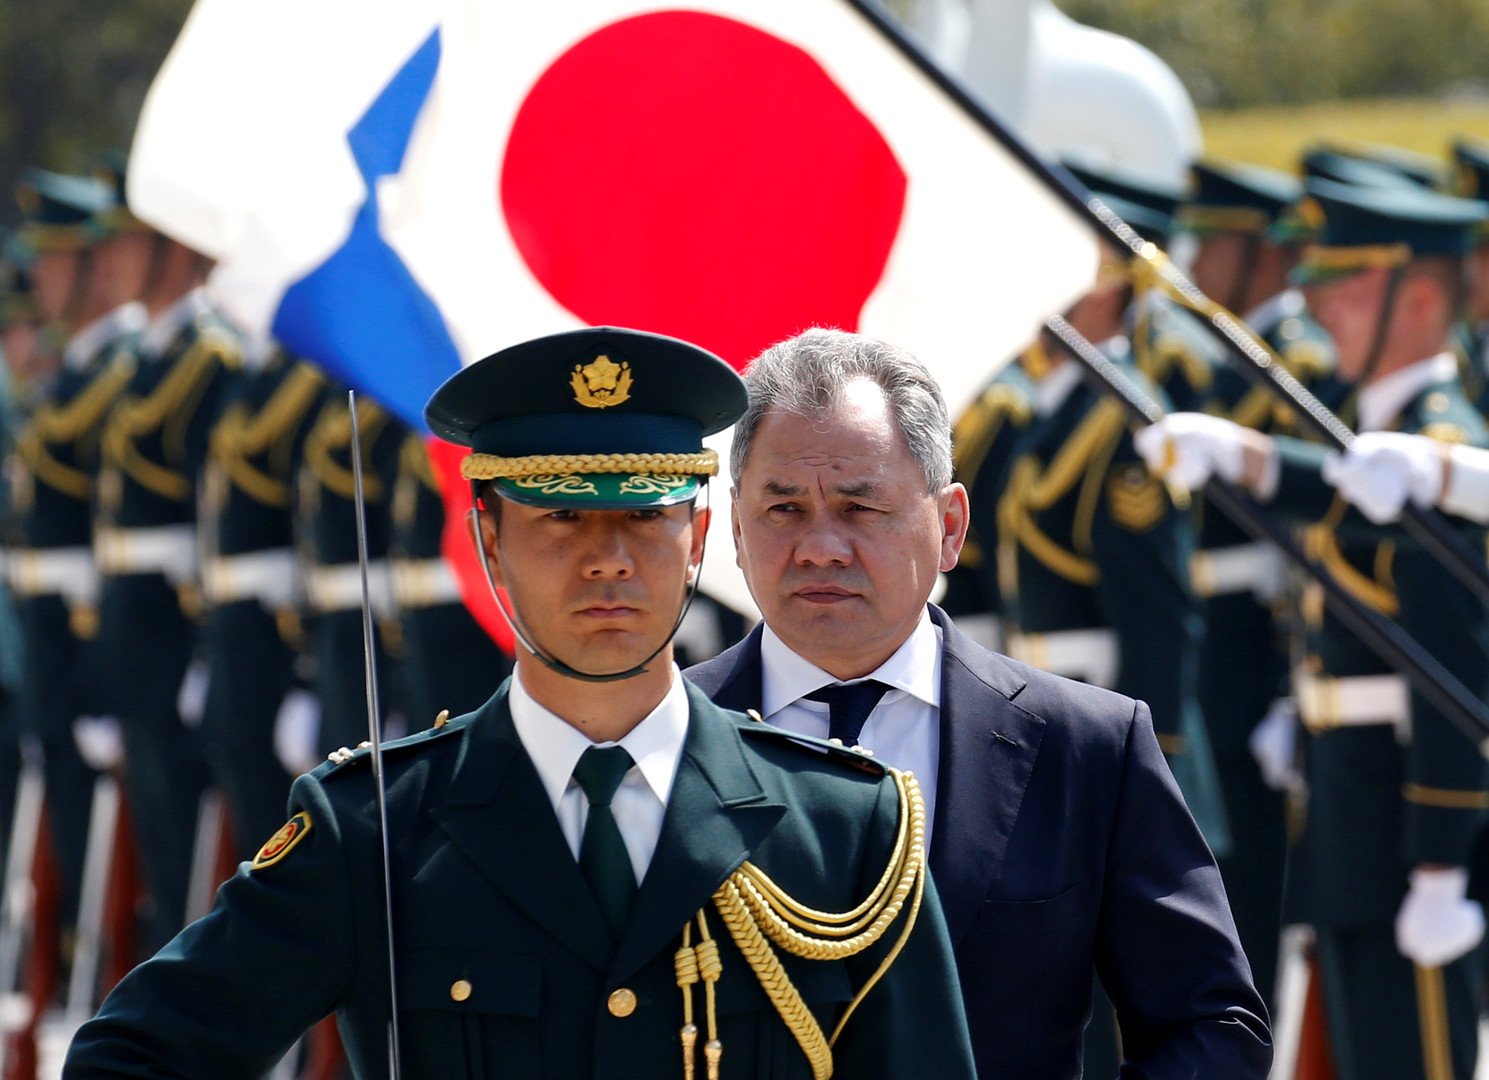 شويغو أول وزير دفاع أجنبي يزور مقر قيادة القوات البرية اليابانية (صور)